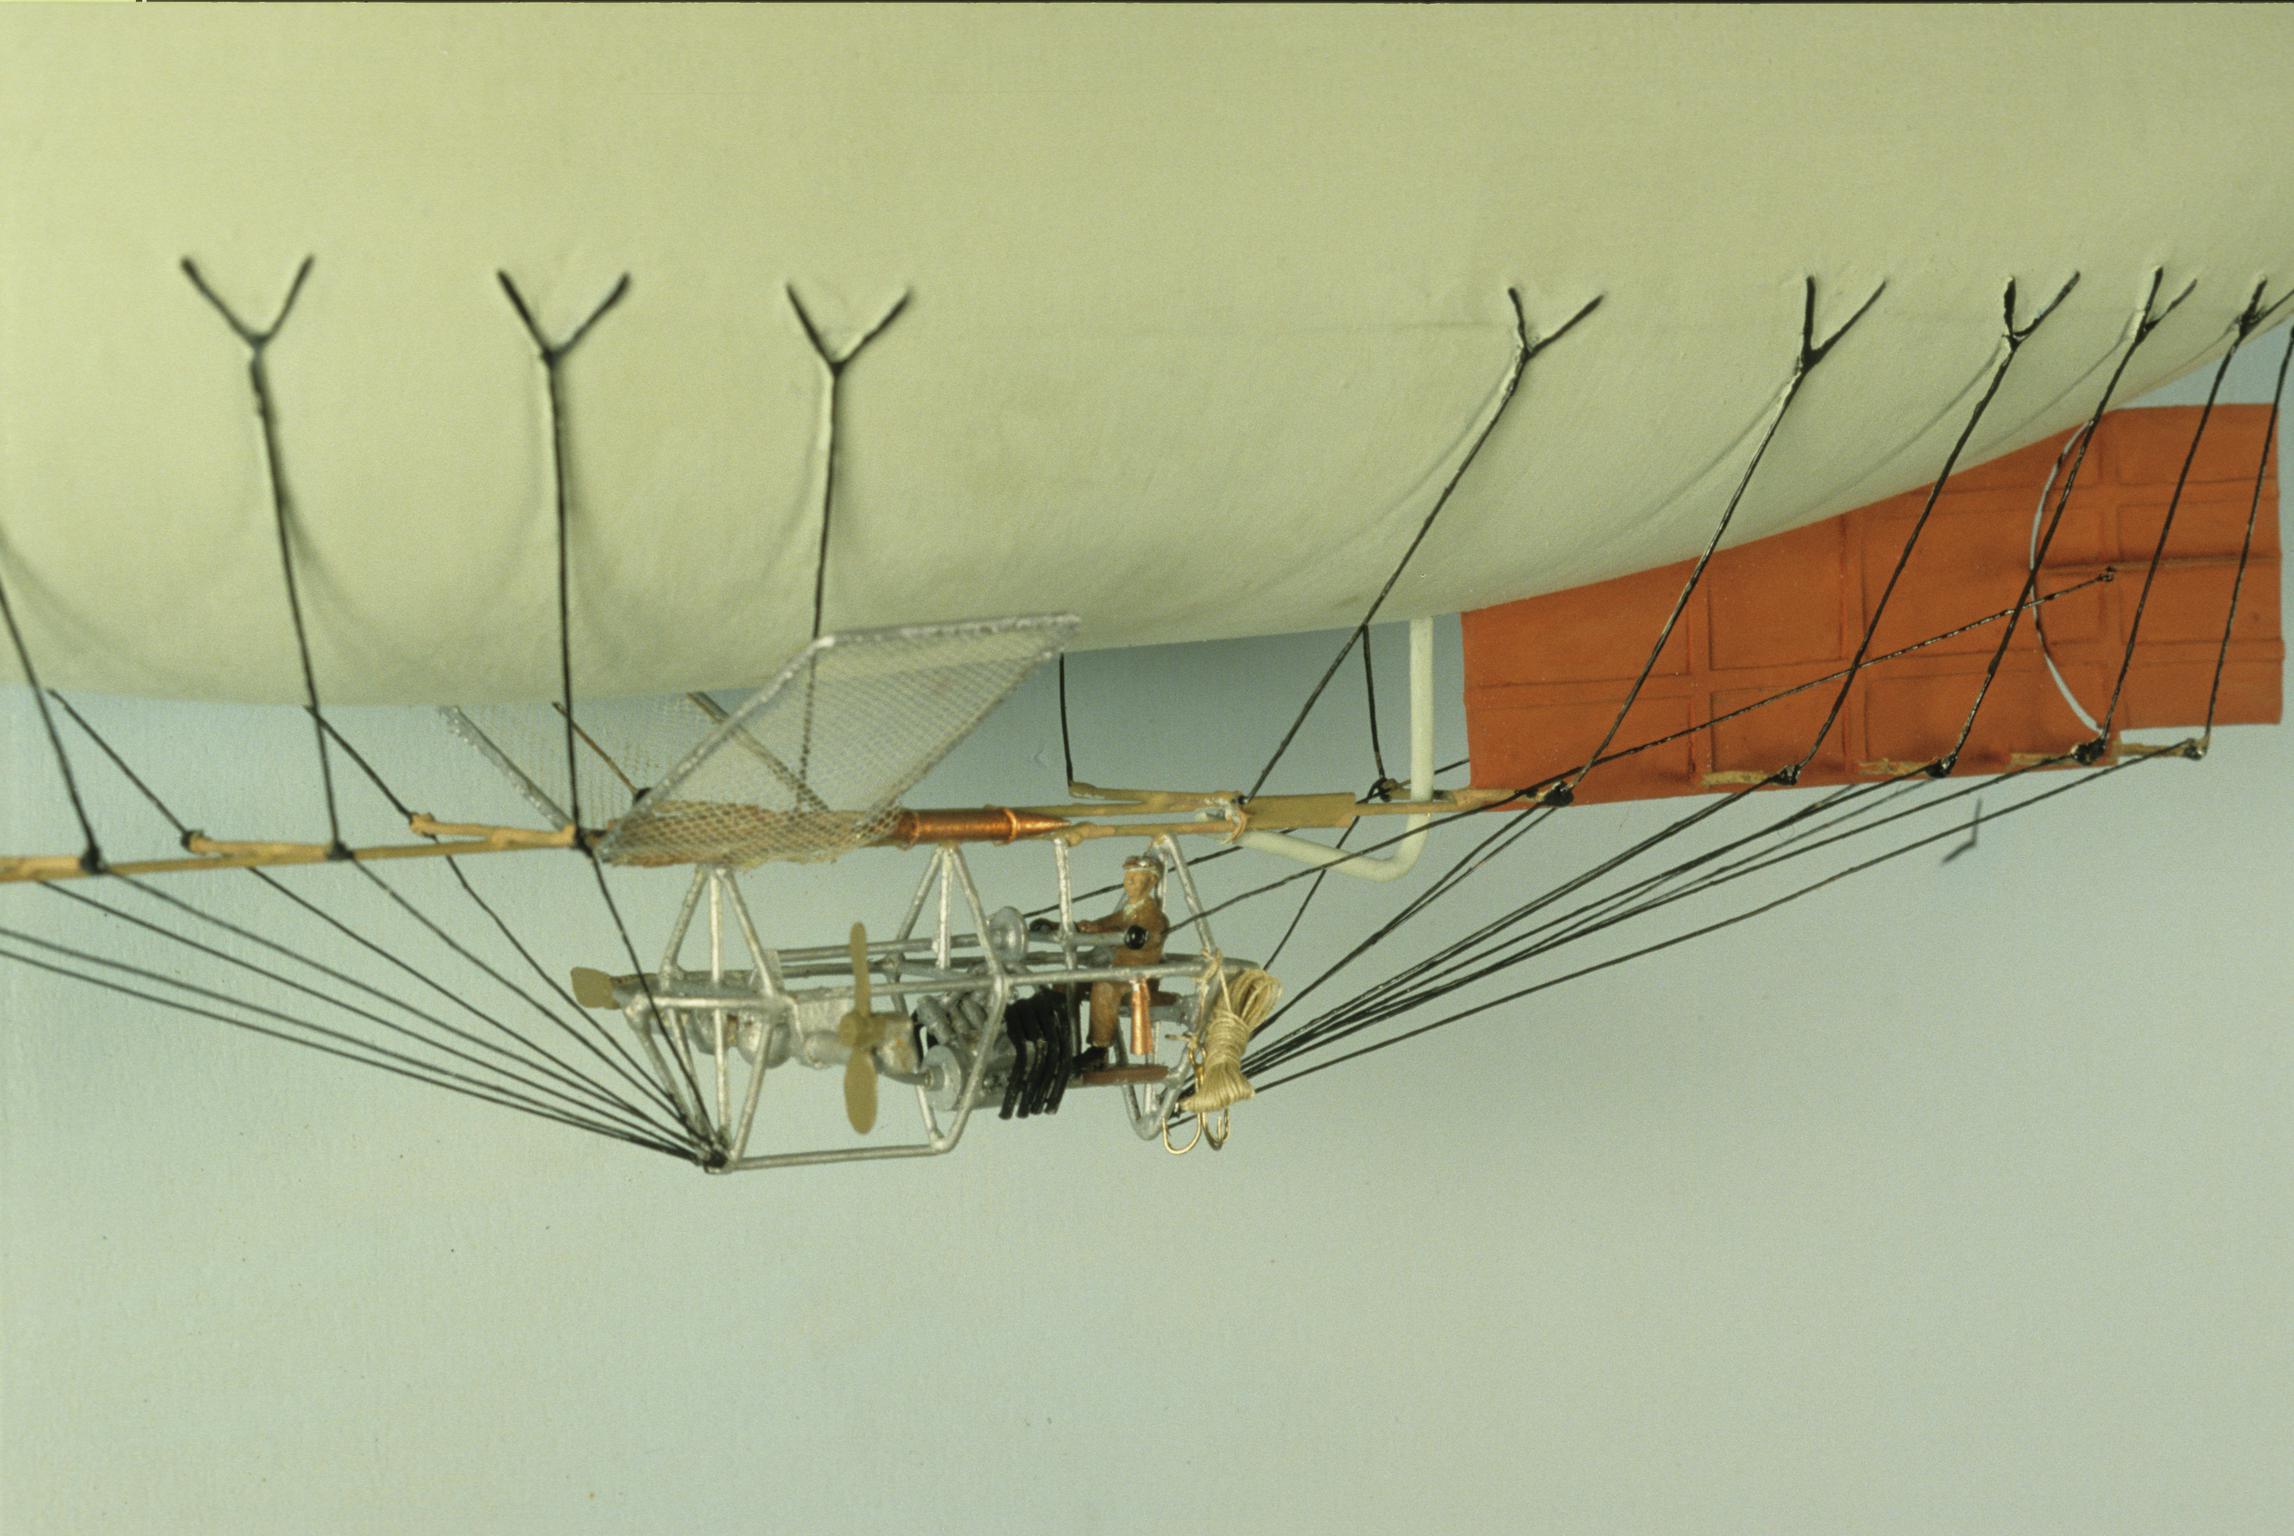 Willows 2 Airship model